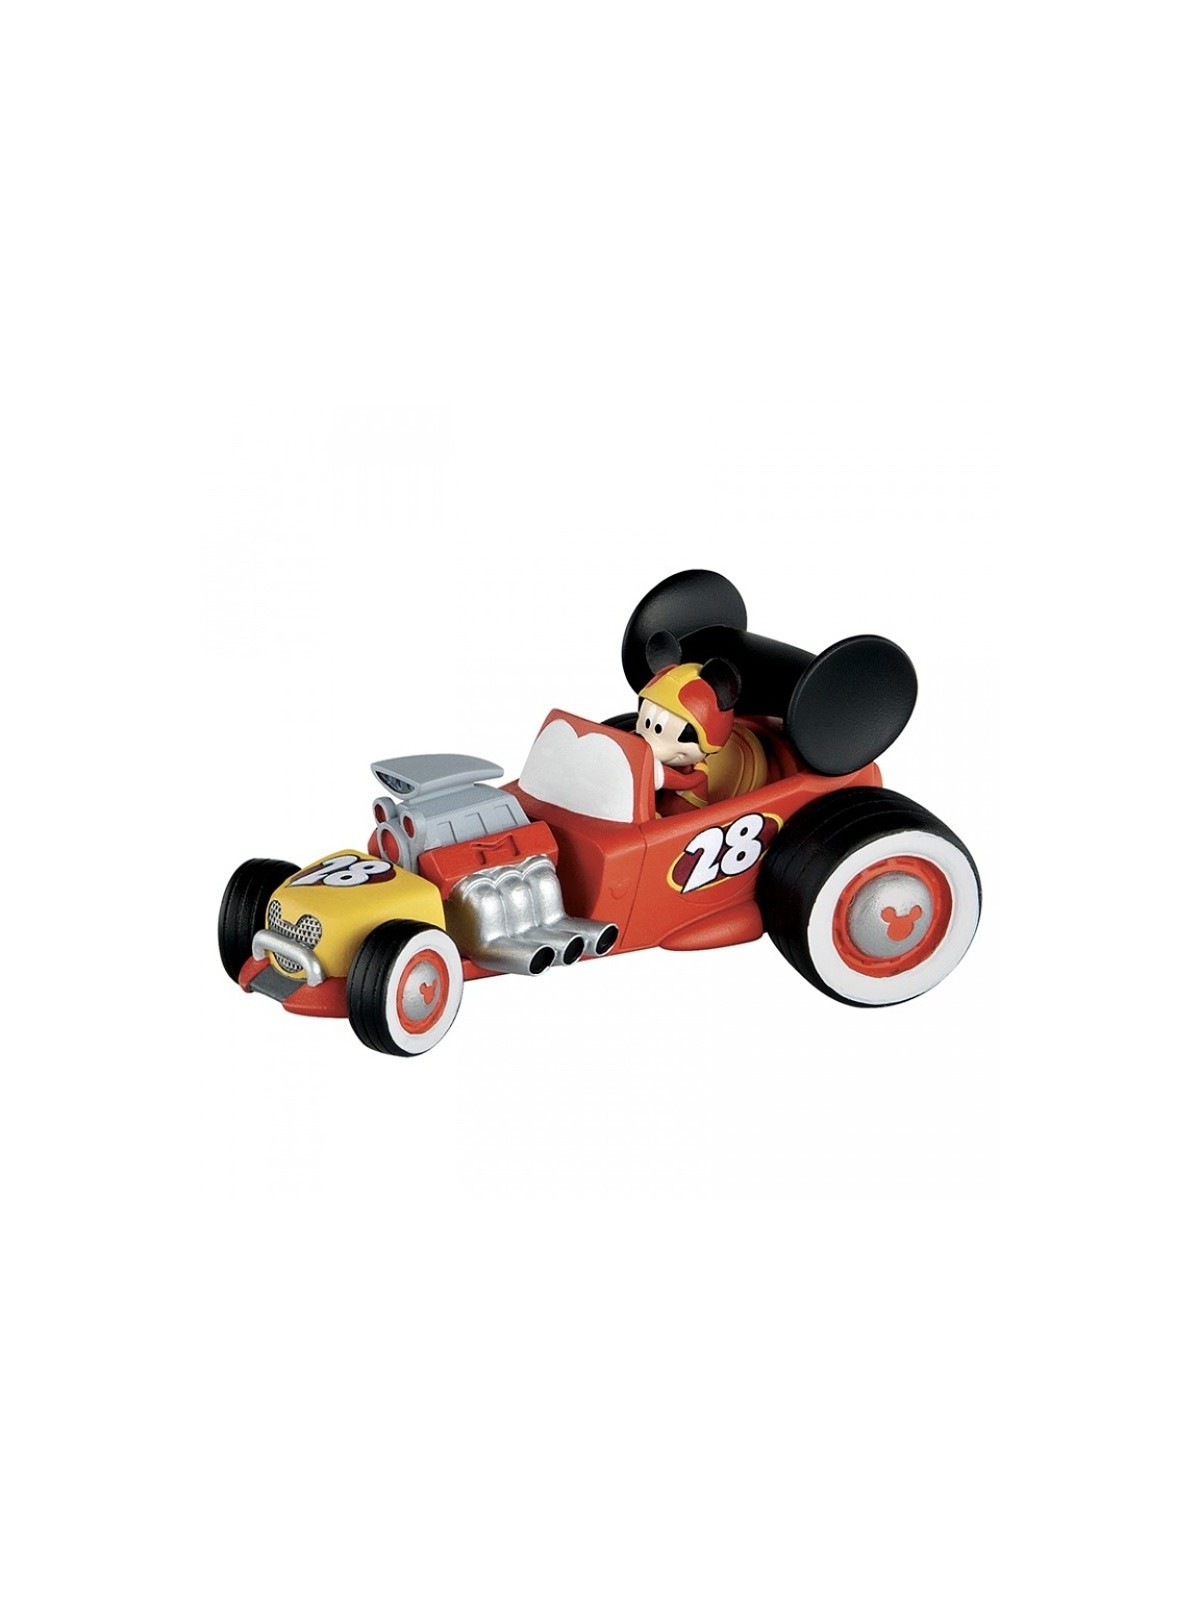 Dekorační figurka - Disney Figure Mickey Mouse závodník